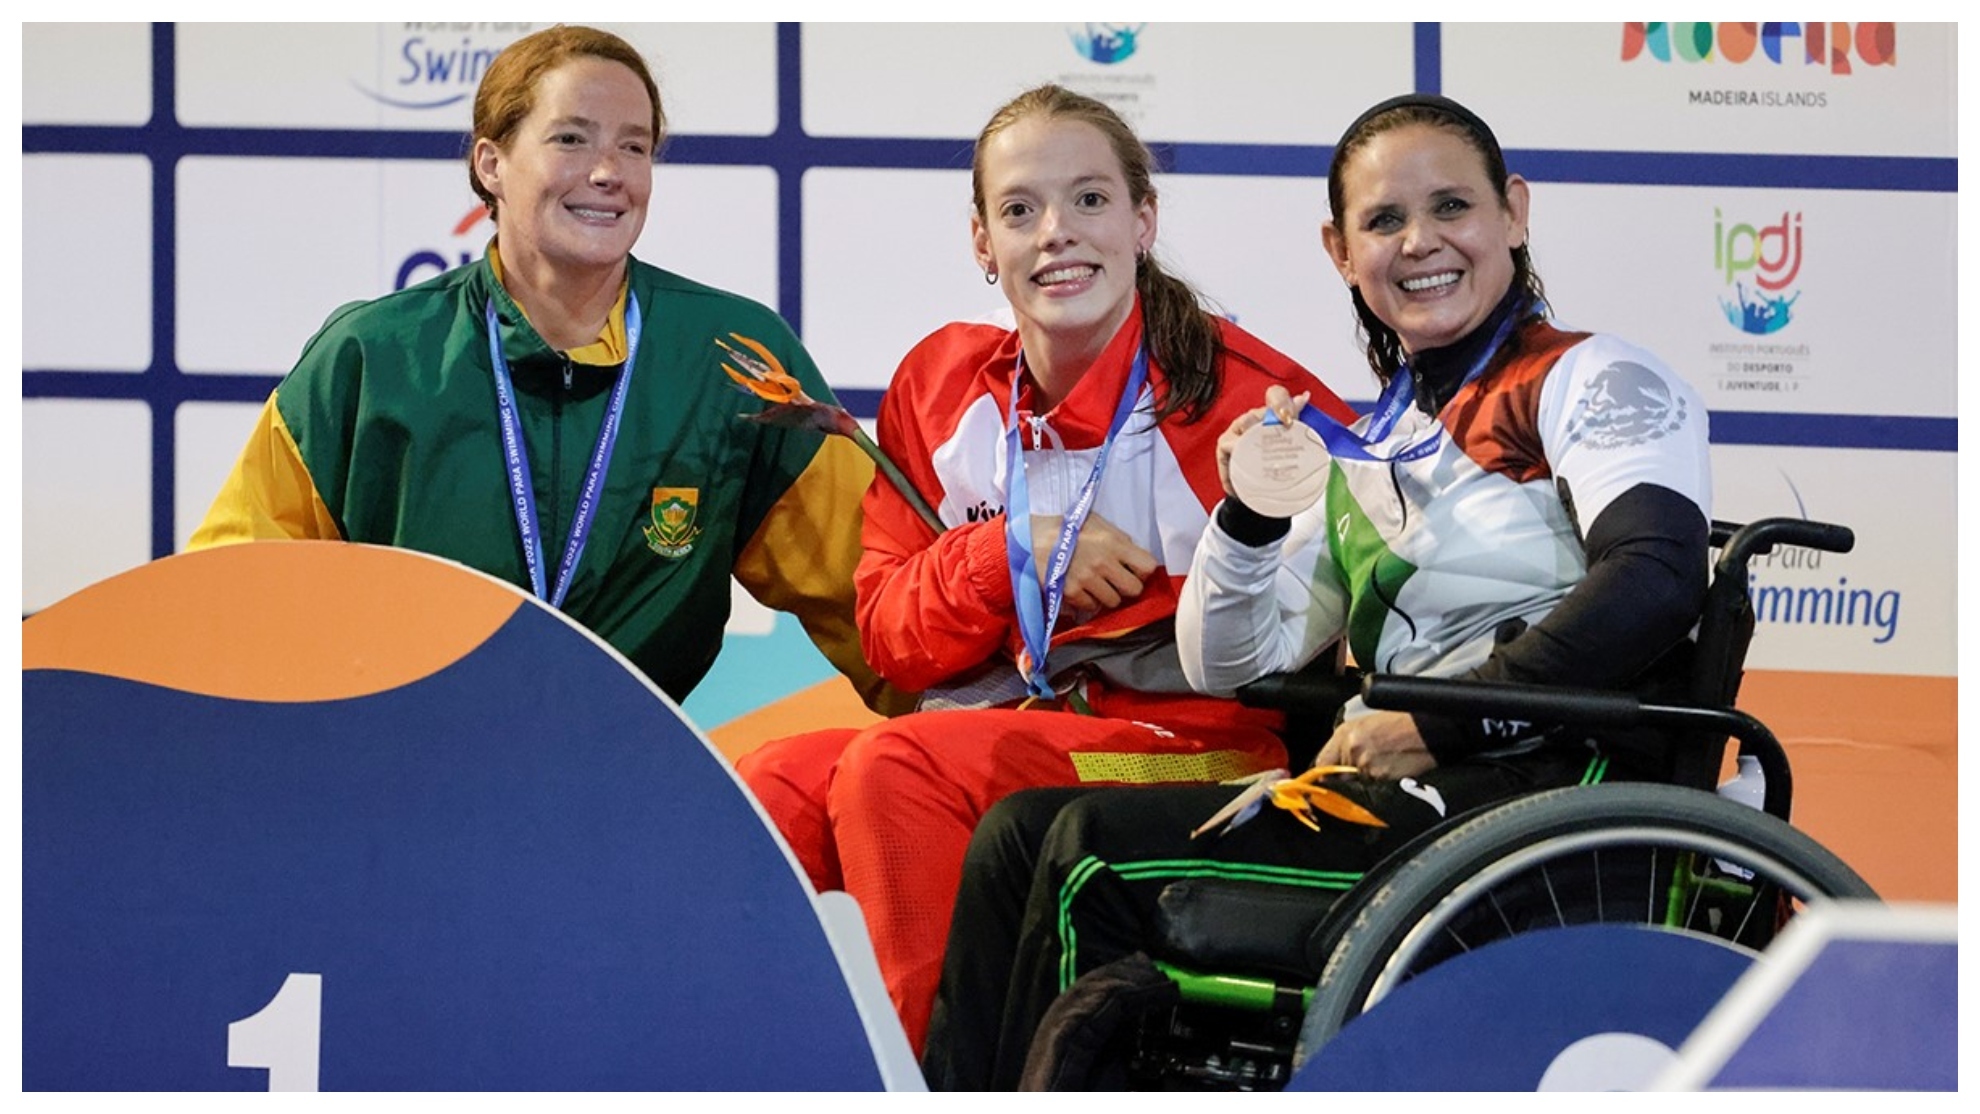 Marta Fernández, en el centro, con su medalla de oro en 150 estilos S4 en el Campeonato del Mundo de Natación Paralímpica Madeira.